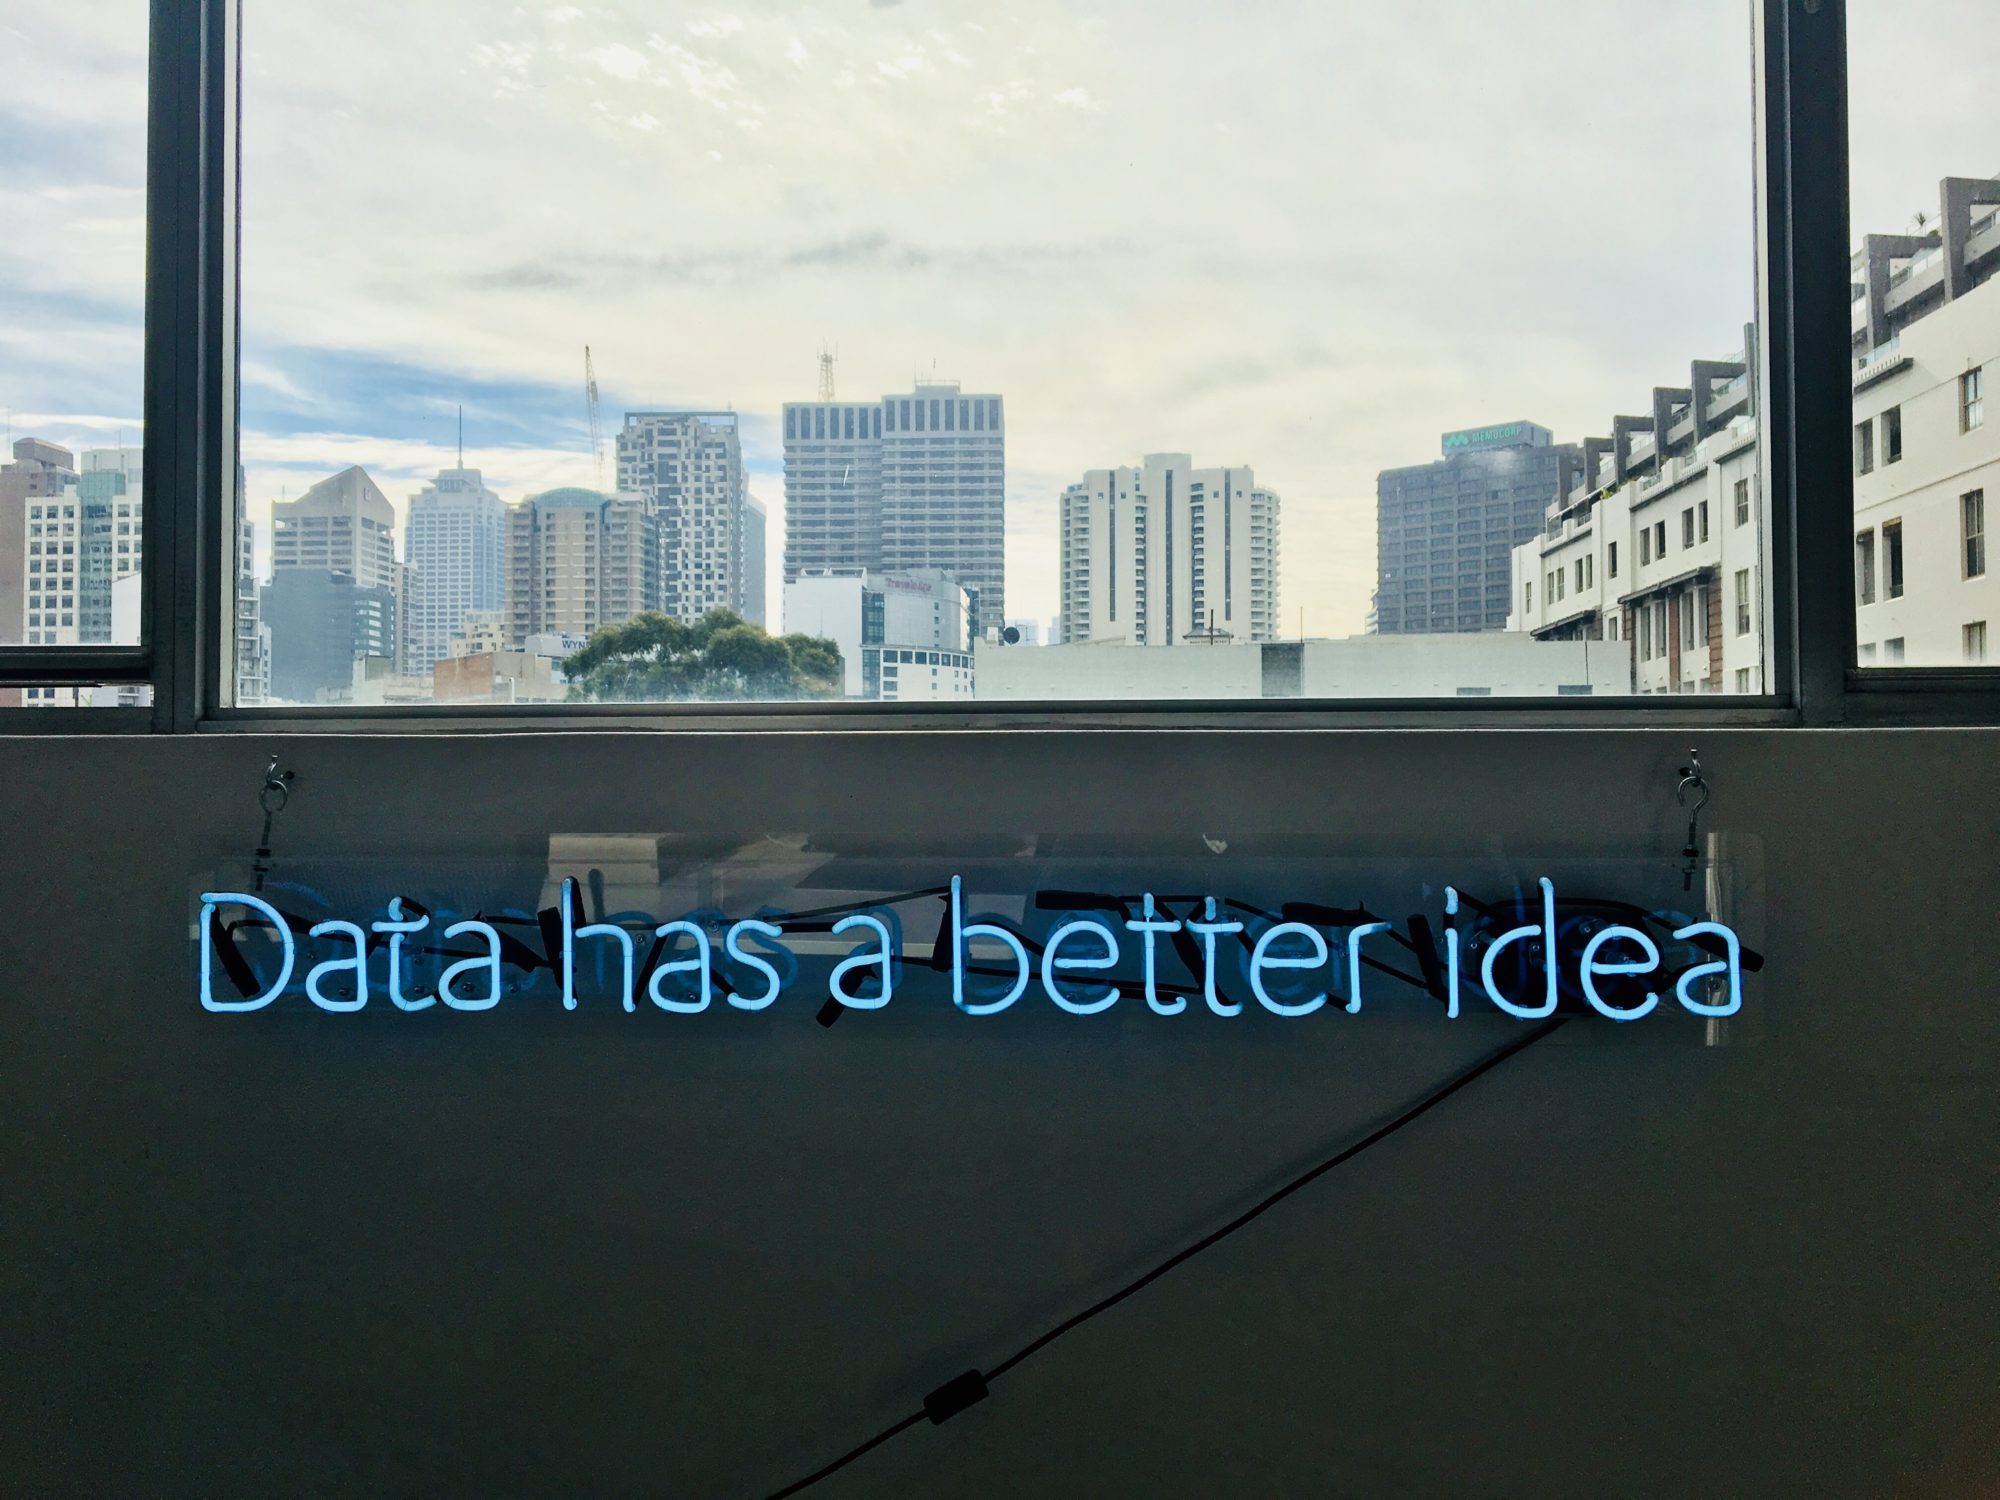 Foto: Blick durch ein Fenster auf die skyline einer Stadt. Text im Bild. Data has a better idea.